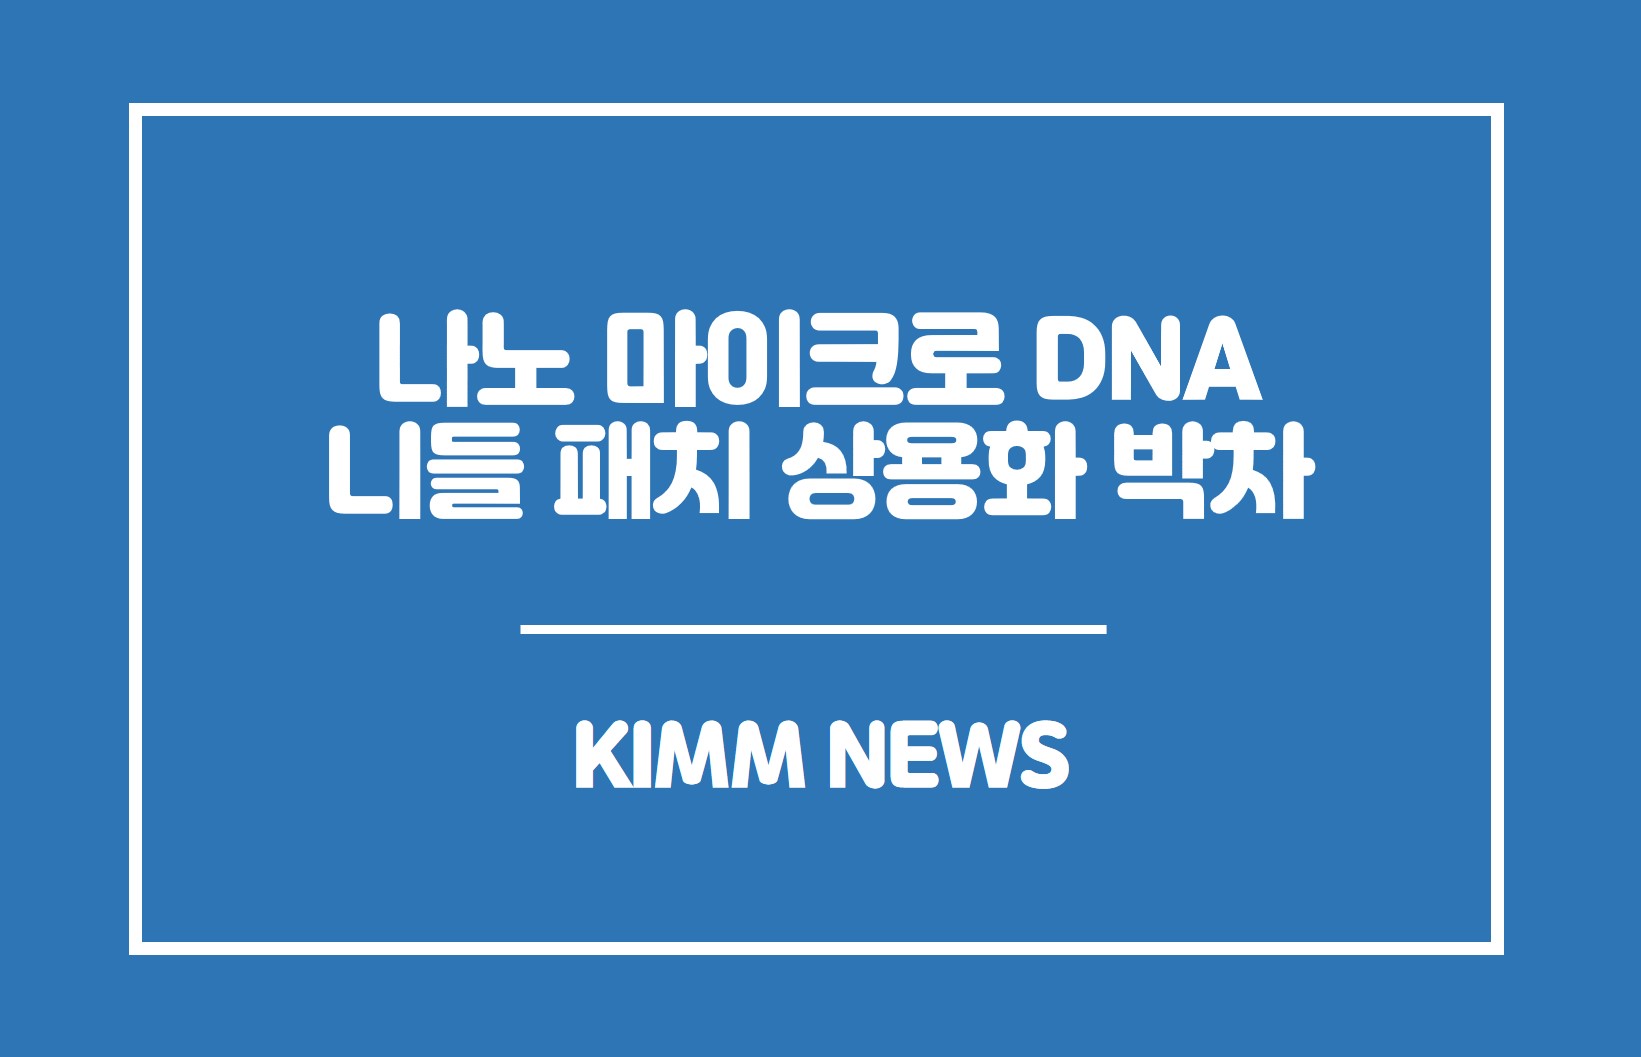 나노 마이크로 DNA 니들 패치 상용화 박차. KIMM NEWS